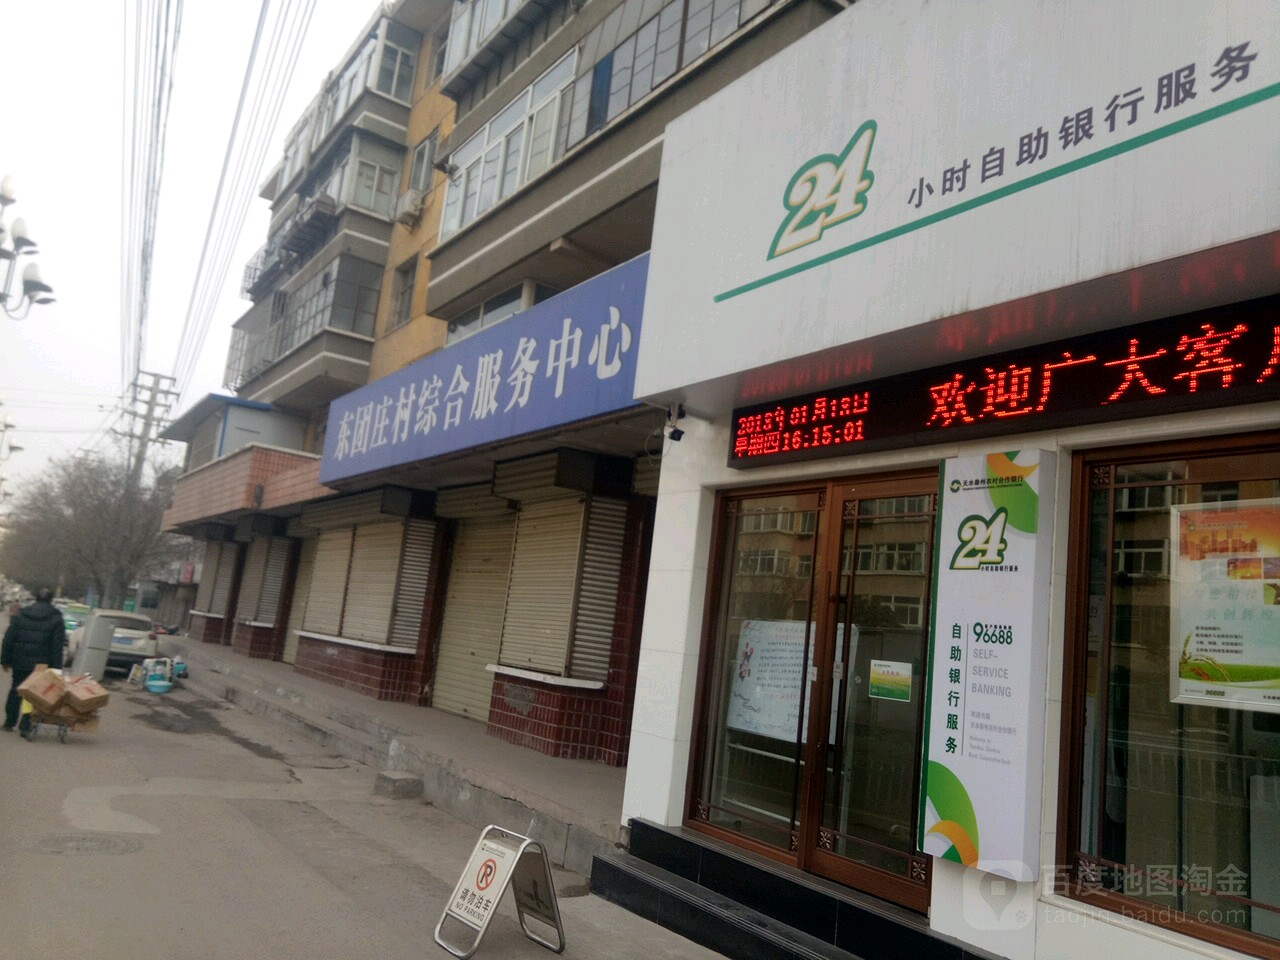 天水秦州农村合作银行24小时自助银行服务(东团庄分理处)